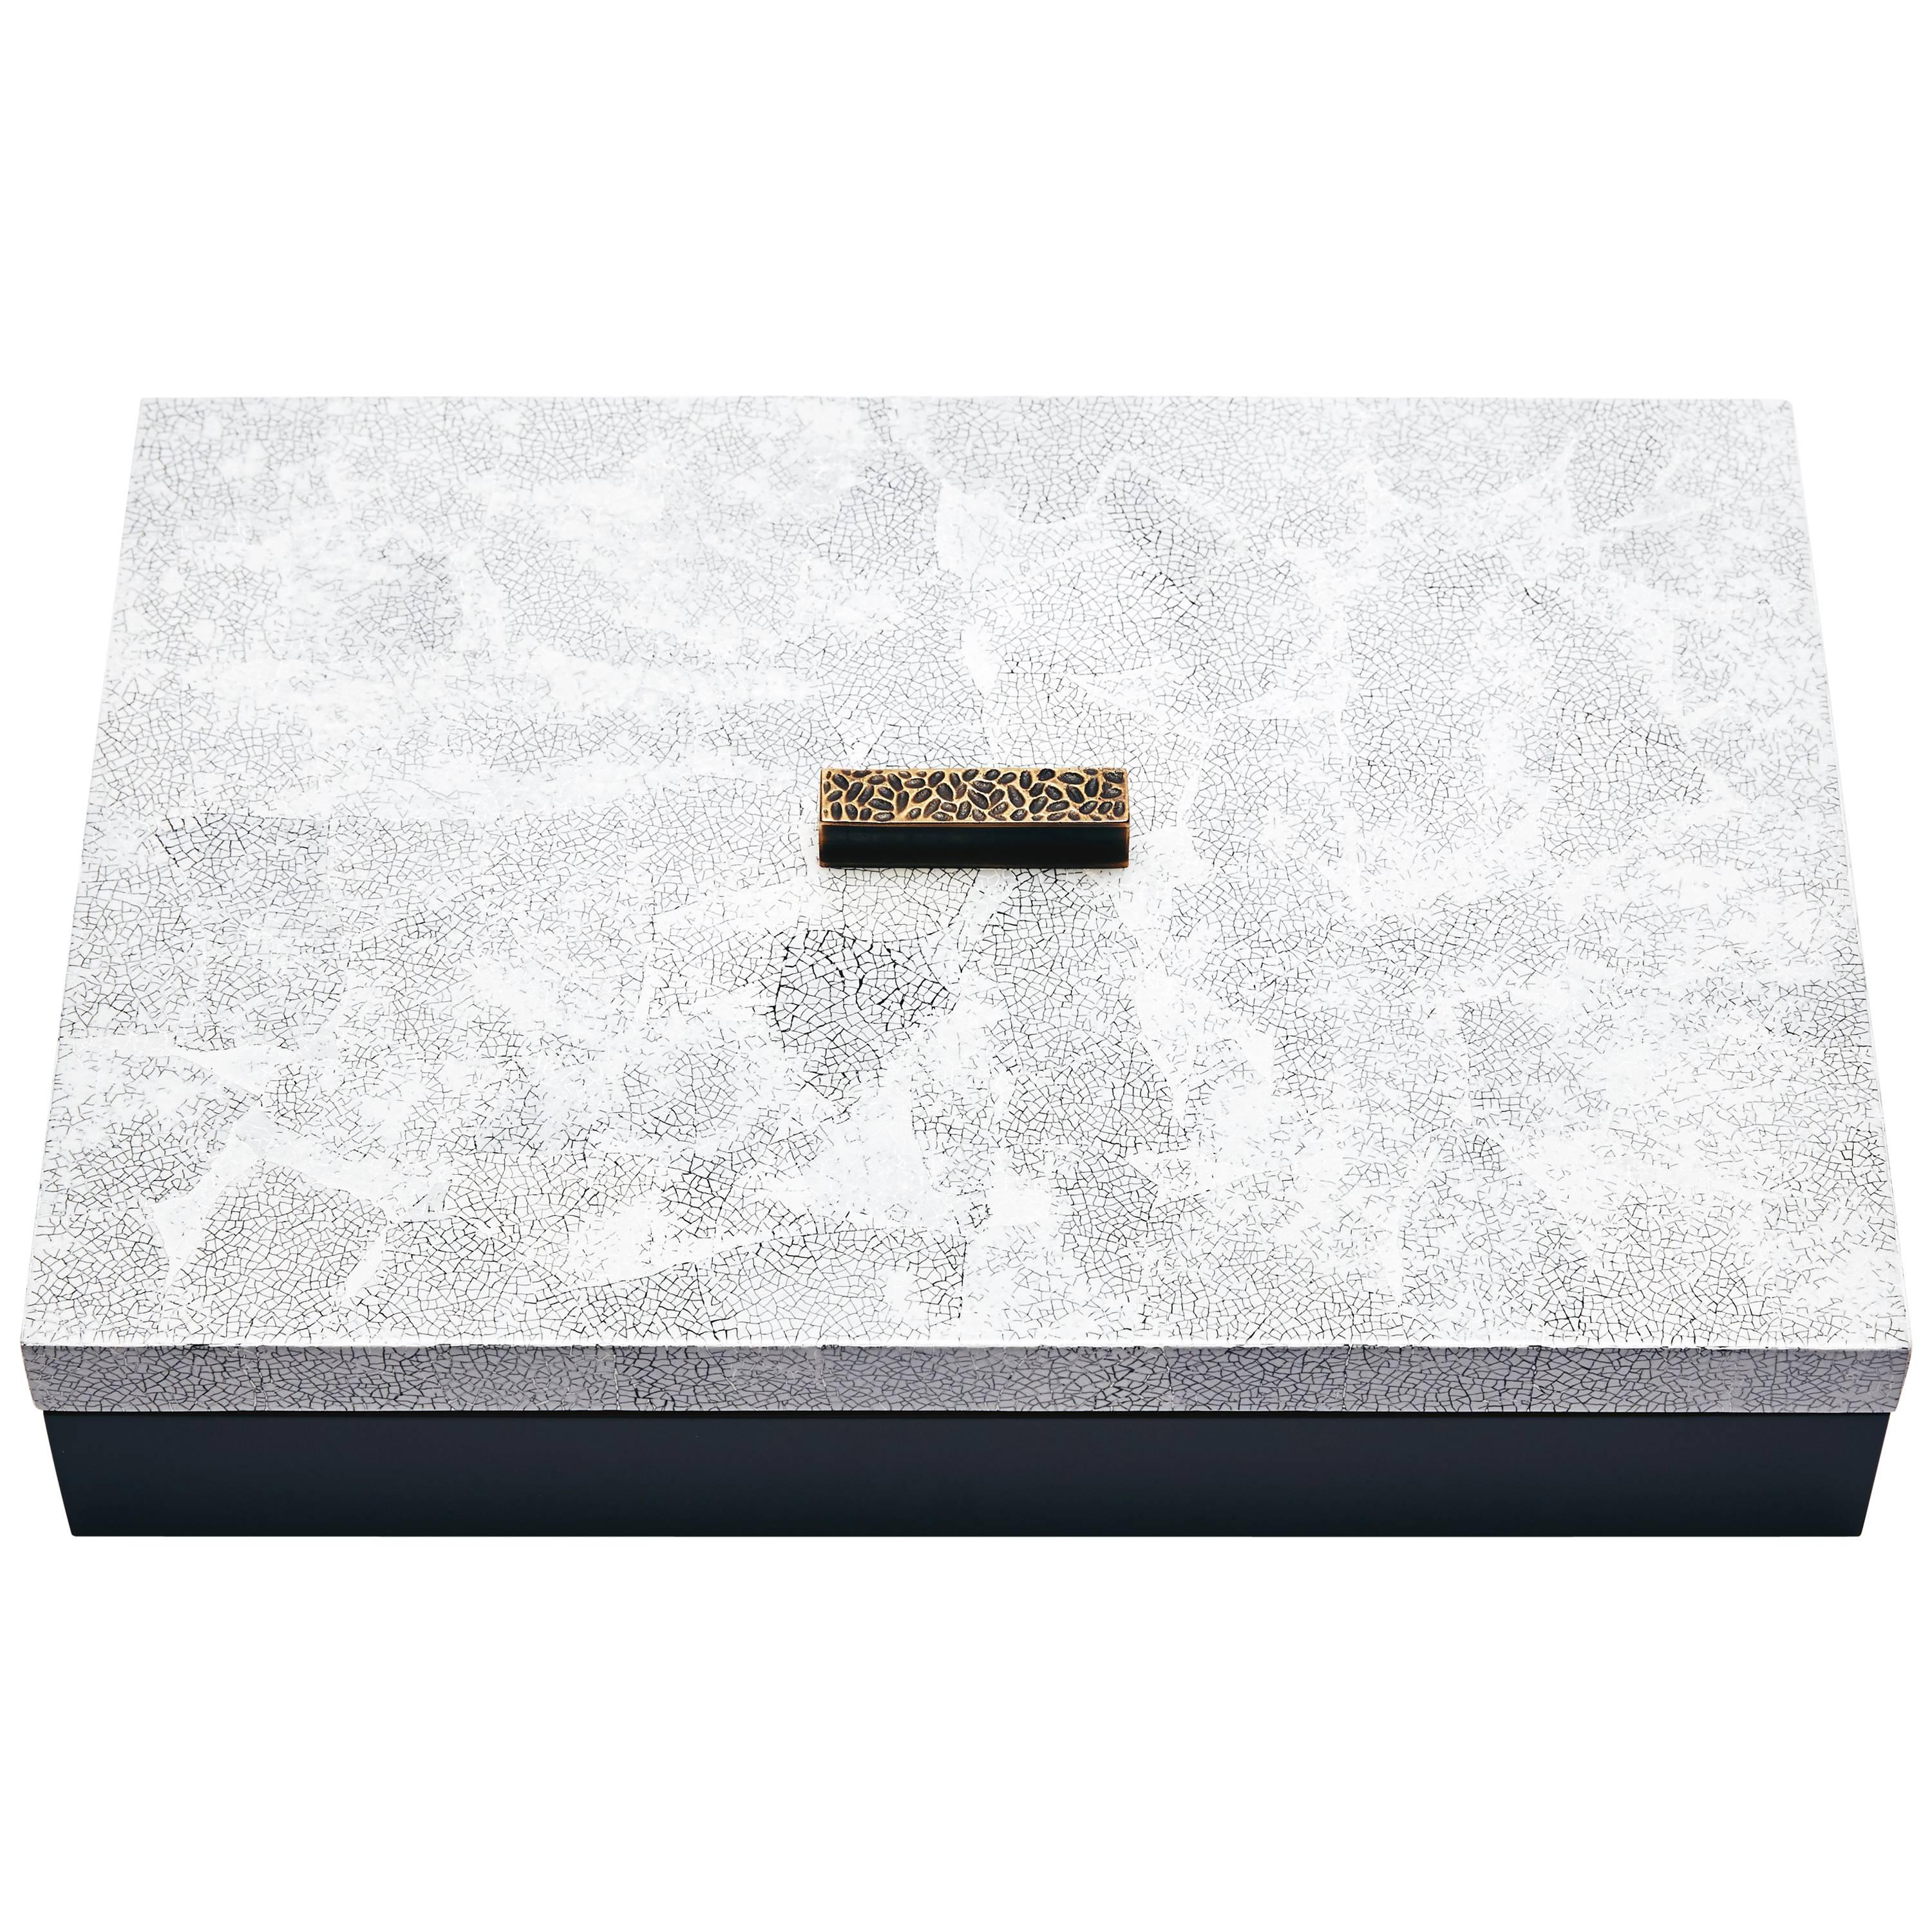 Decorative Boxes, ELLA by Reda Amalou Design, 2016 - White Eggshell For Sale